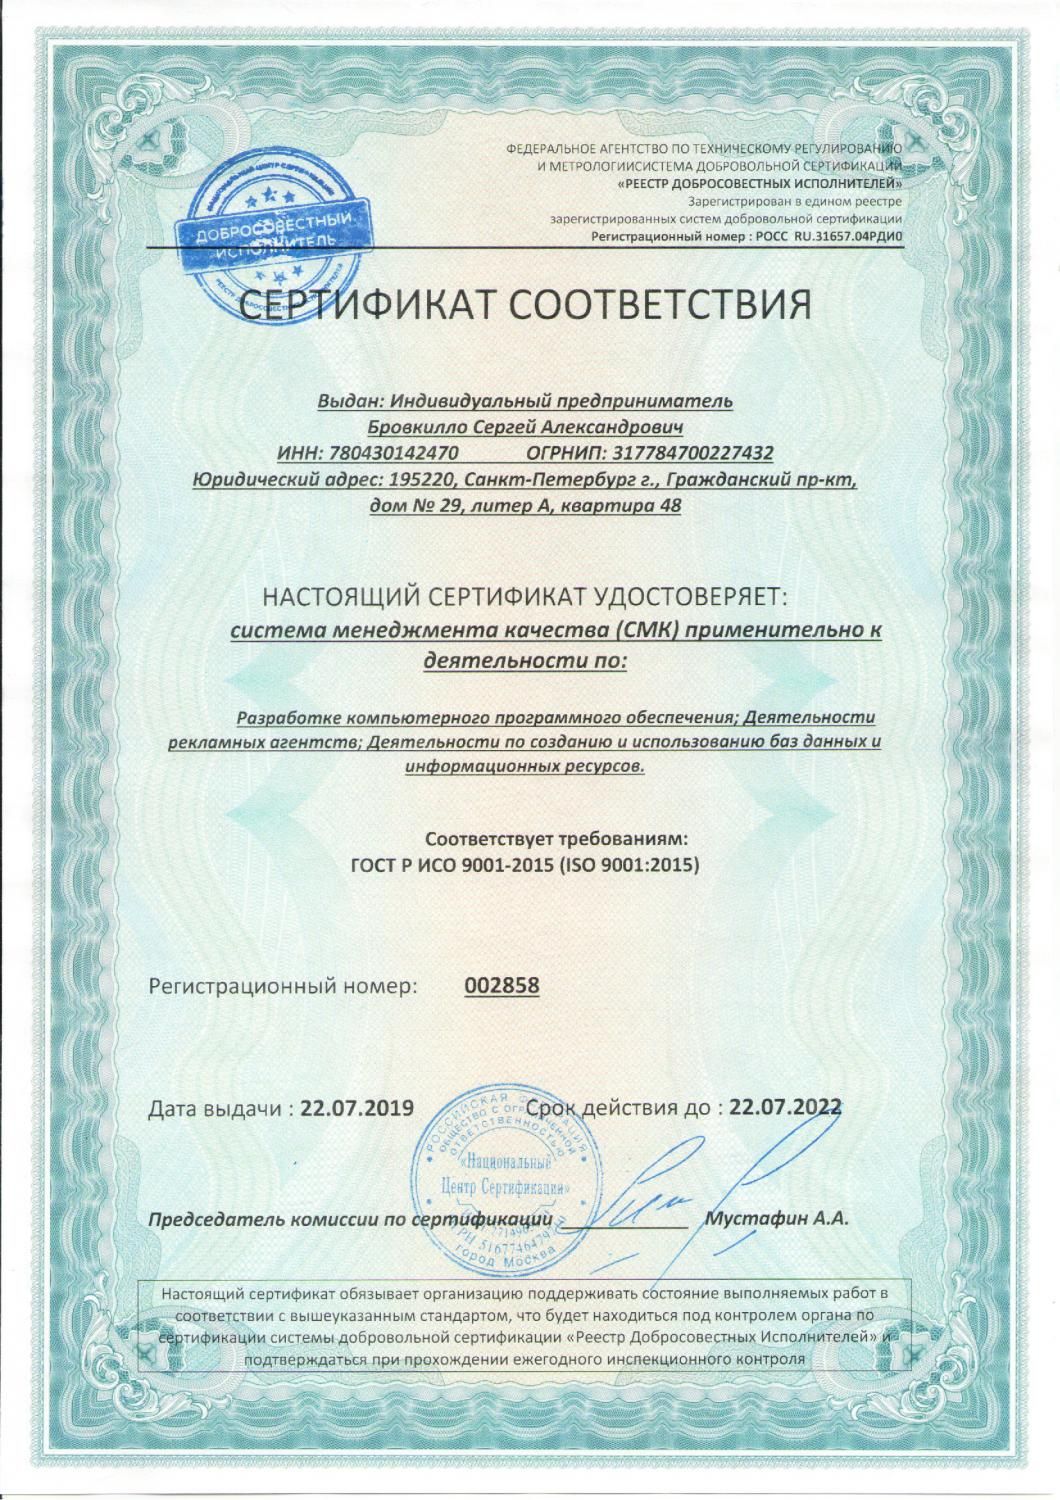 Сертификат соответствия ISO 9001:2015 в Белгорода